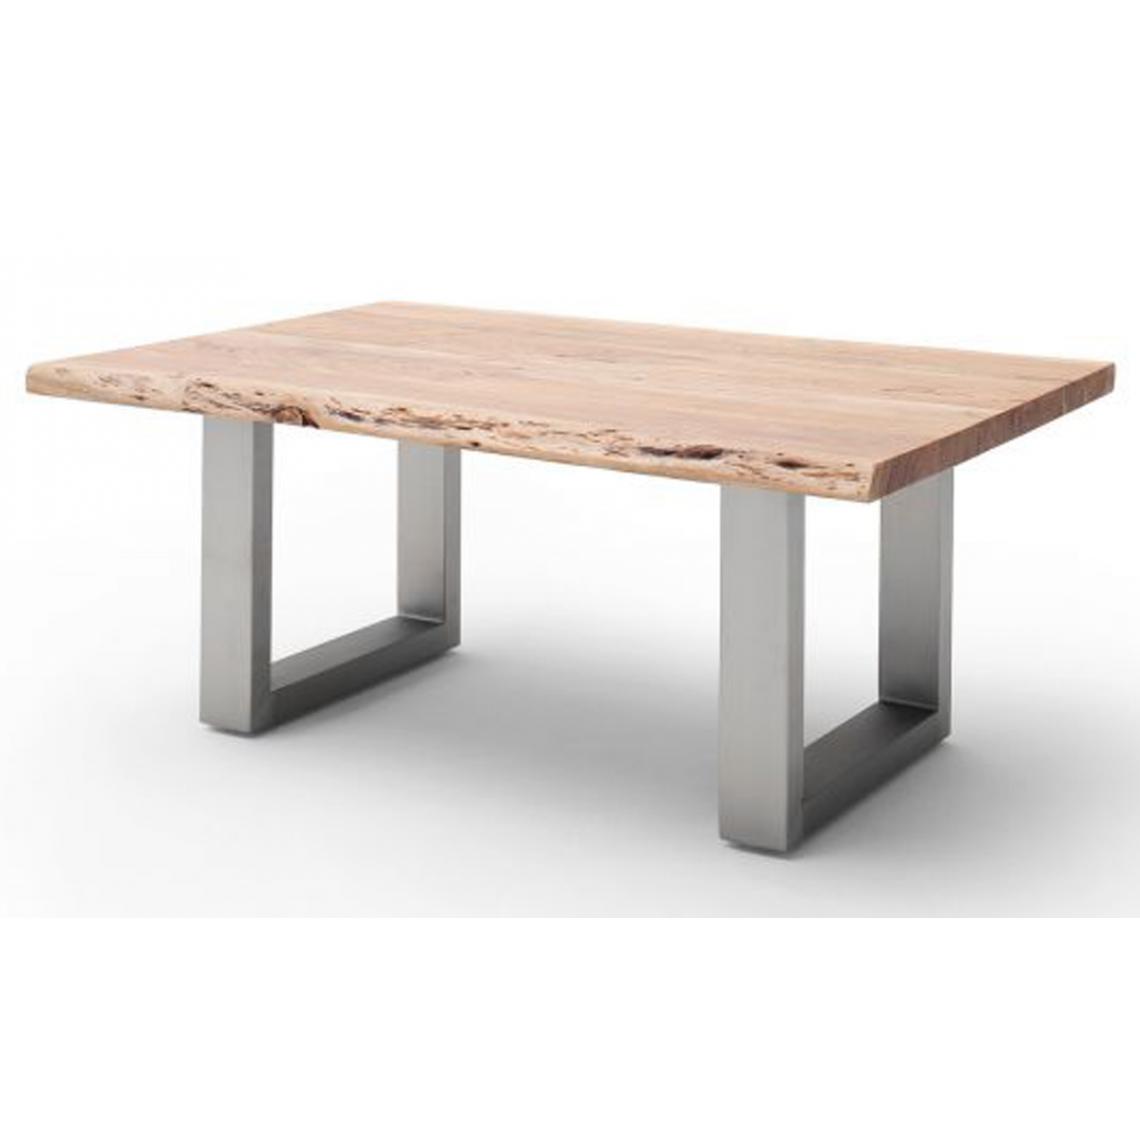 Pegane - Table basse en bois d'acacia massif naturel et acier inoxydable - L.110 x H.45 x P.70 cm - Tables basses